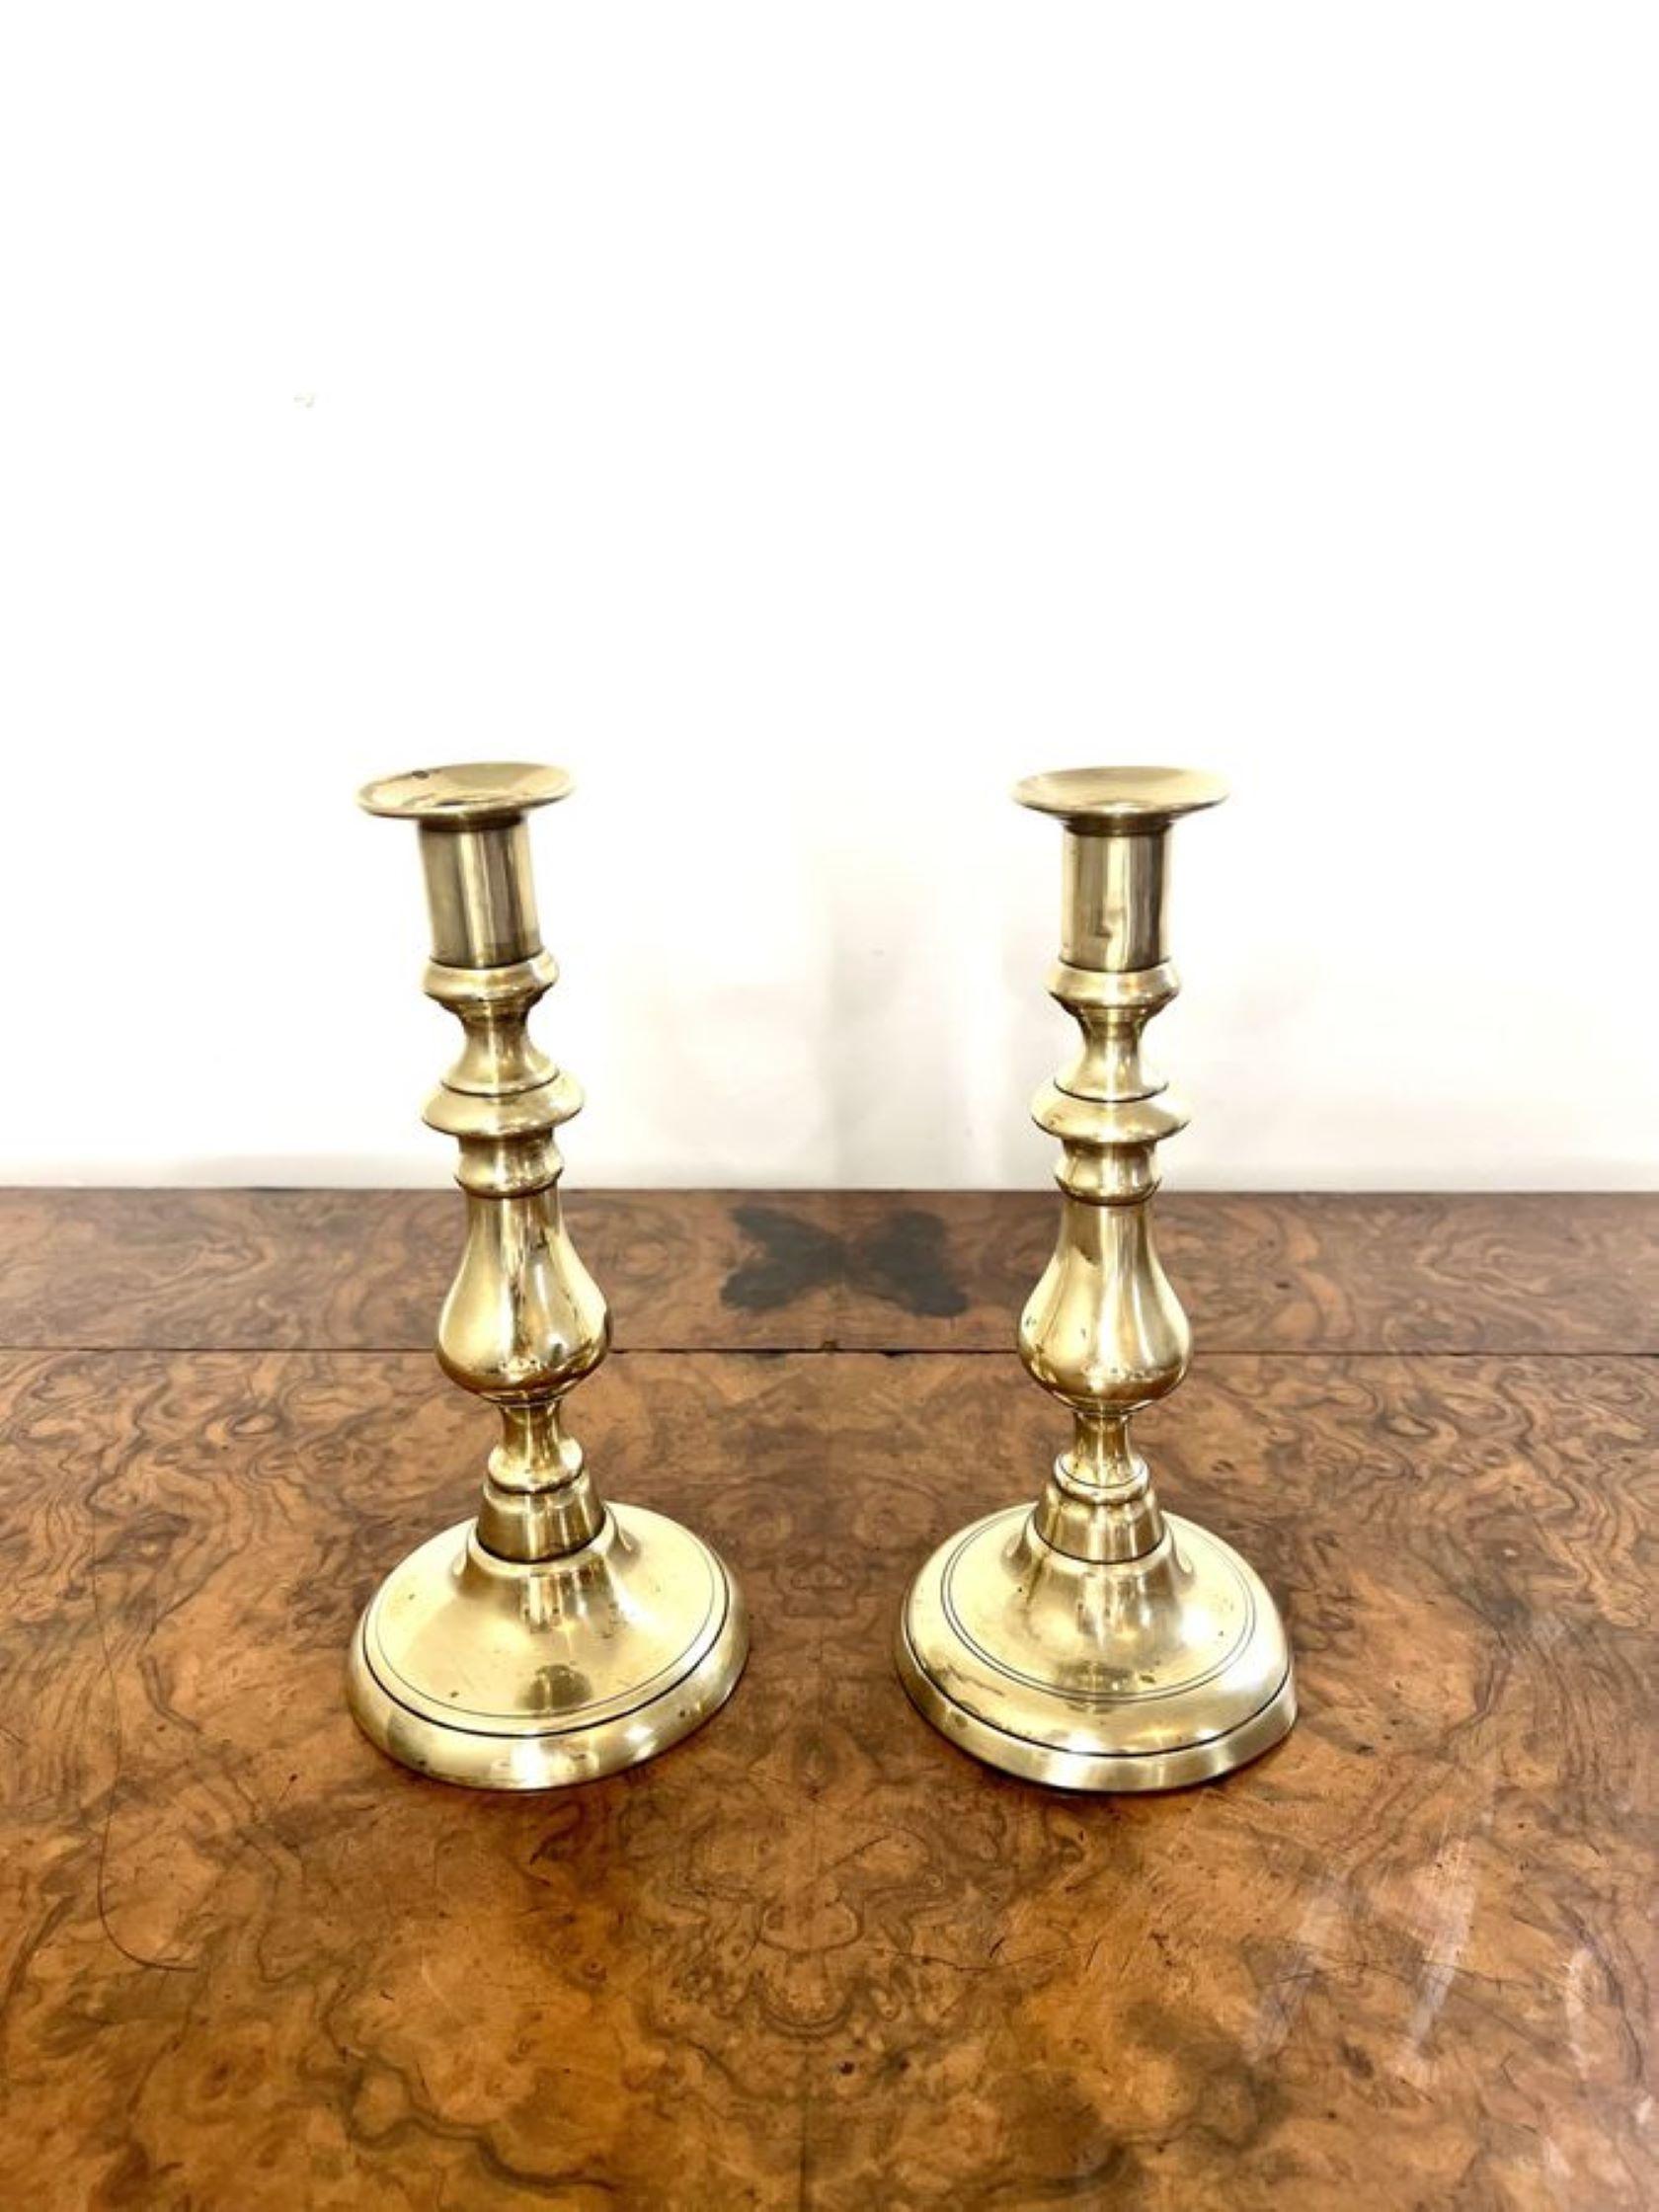 Superbe paire de chandeliers anciens en laiton de l'époque victorienne ayant une élégante paire de chandeliers en laiton élevés sur des bases circulaires. 

D. 1880